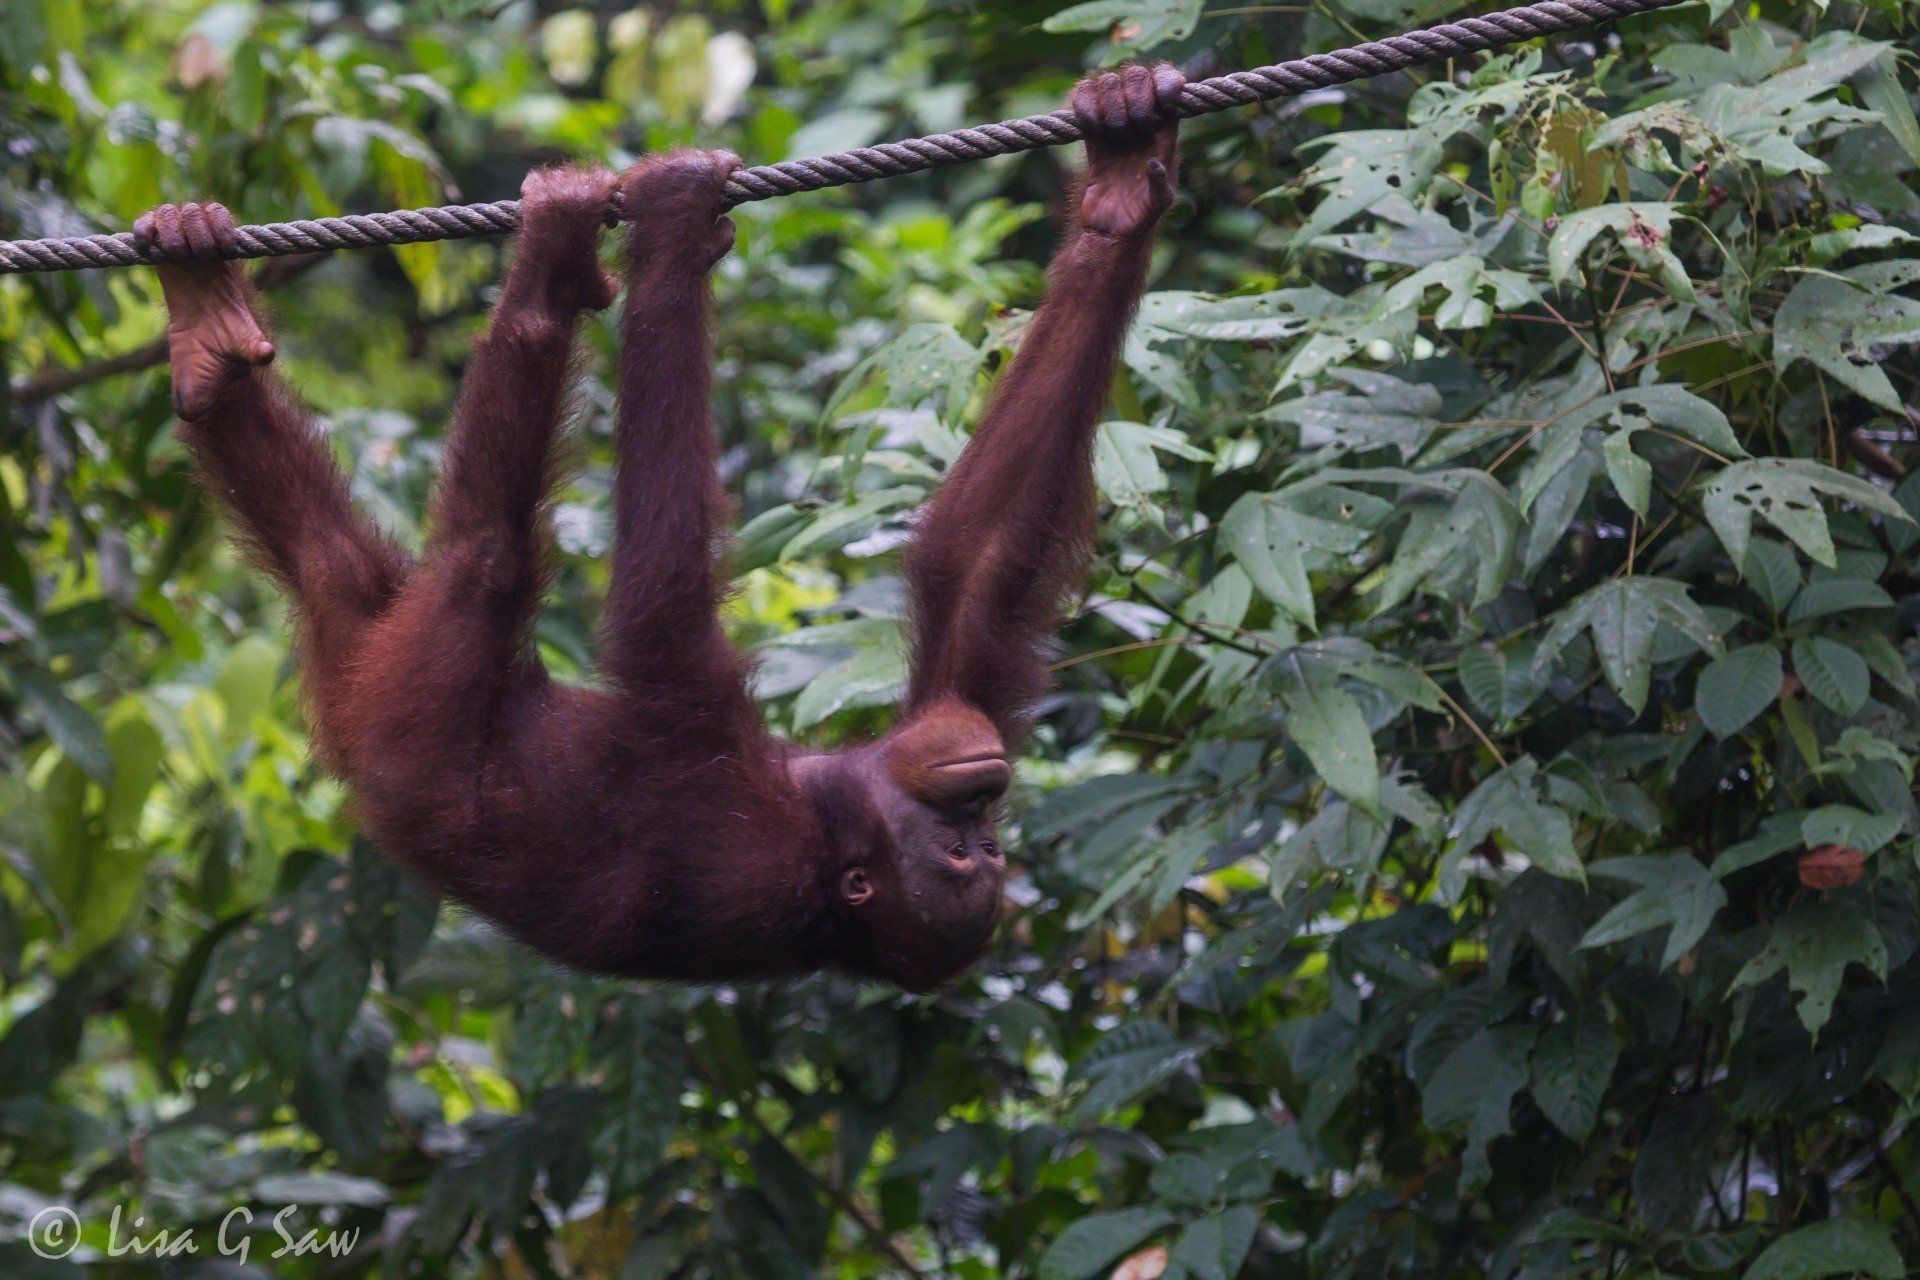 Orangutan climbing along a rope at Sepilok